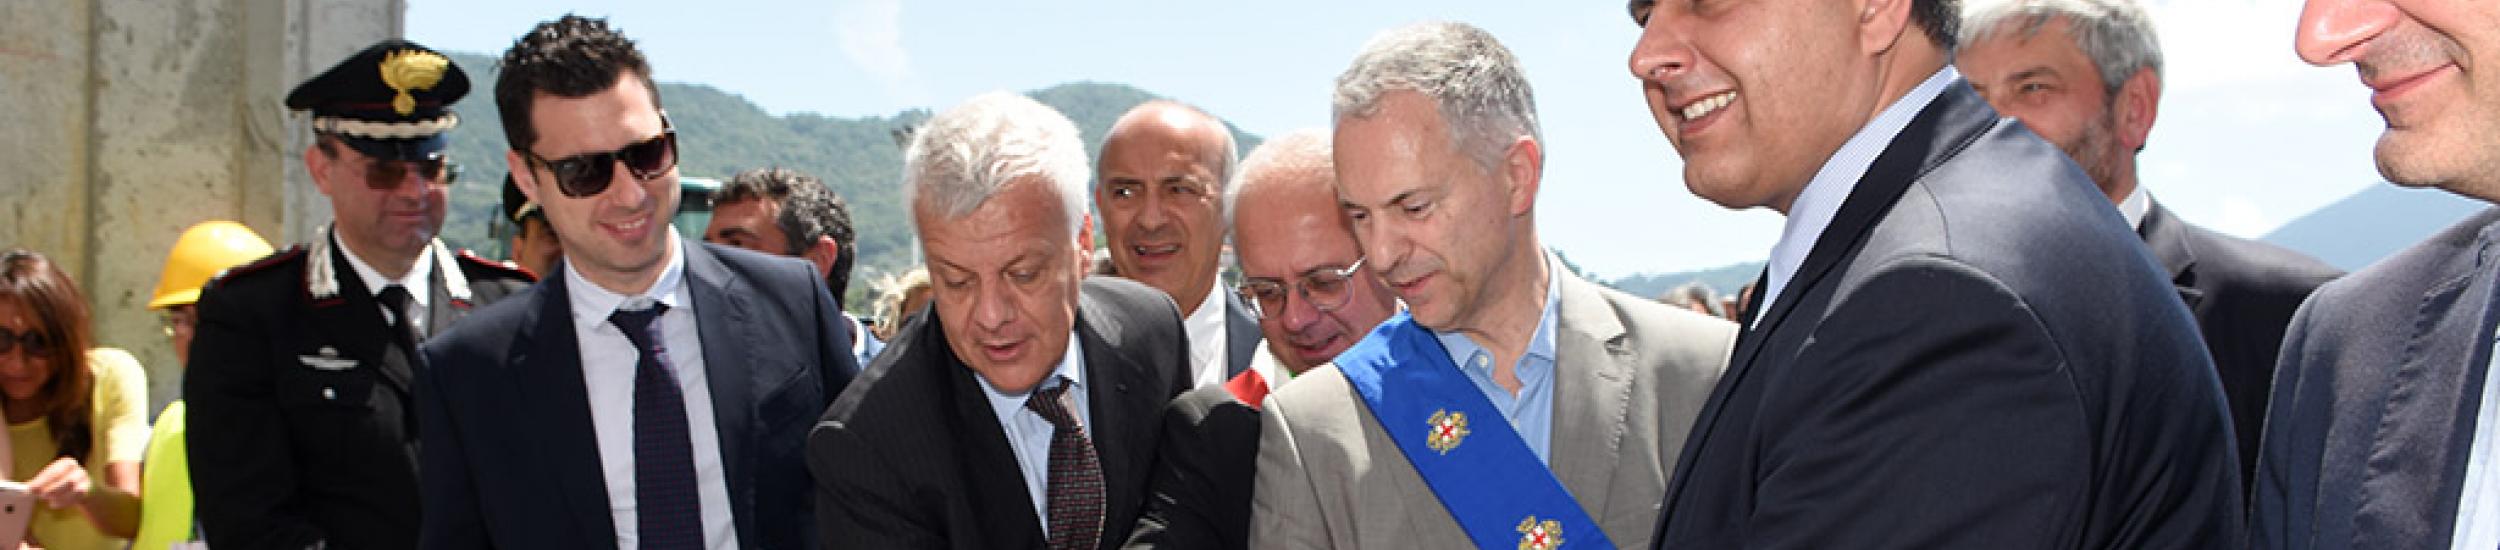 Il ministro galletti inaugura il nuovo depuratore del golfo paradiso: “virtuosa sinergia fra enti”